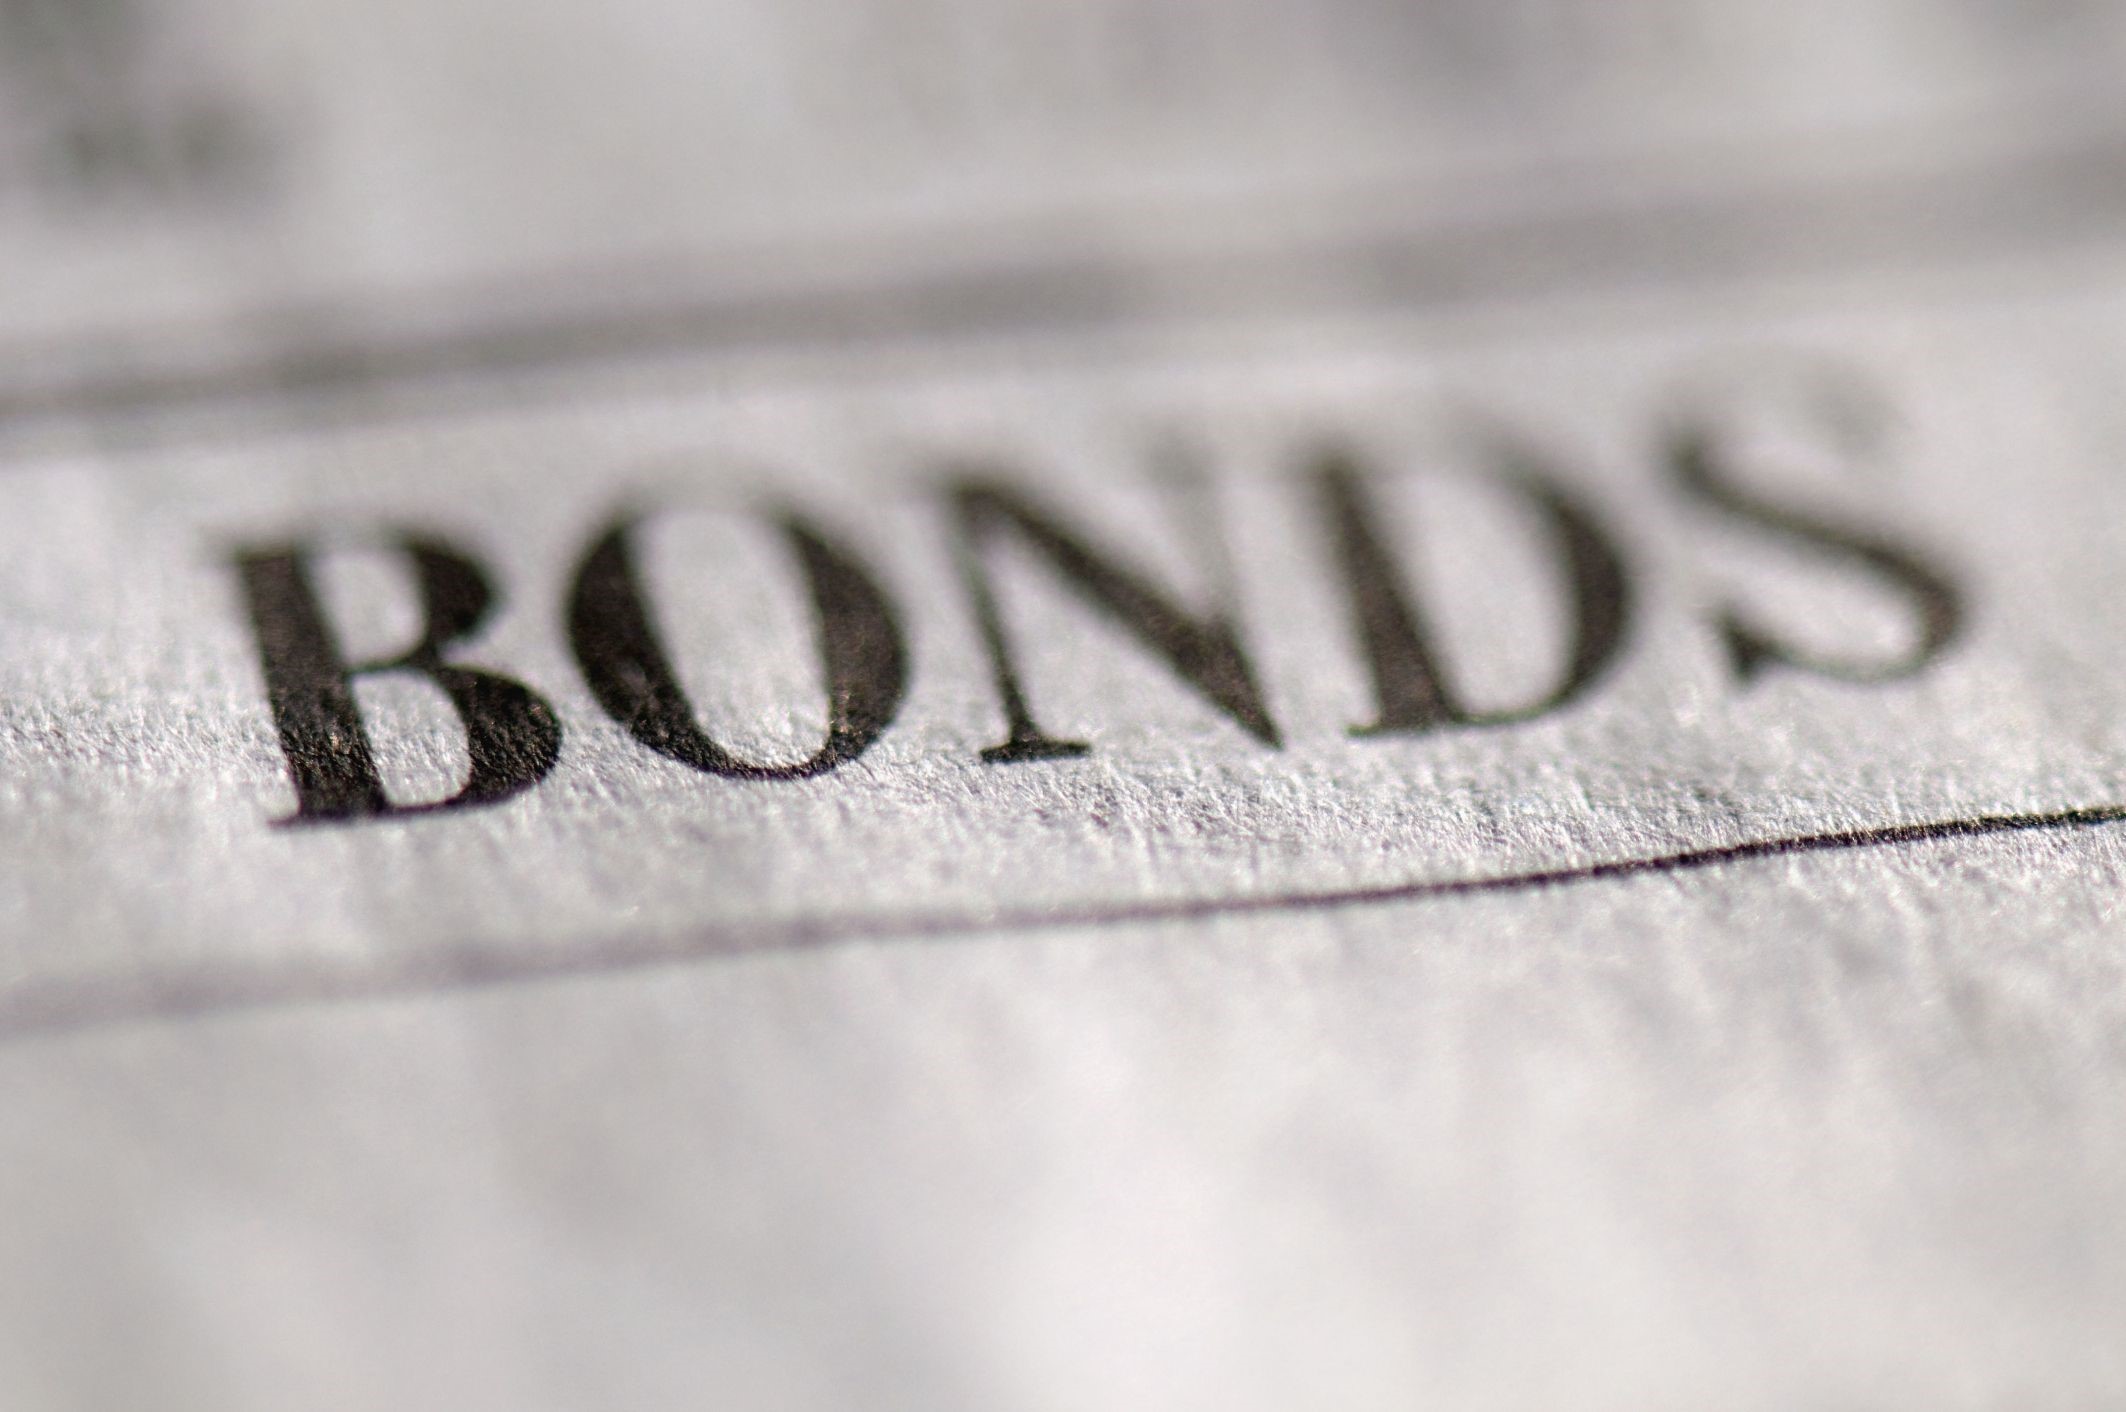 SPDR Barclays 10+ Year Government Bond UCITS ETF (SYBV ETF) investerar i statsobligationer med fokus på Europa. Obligationens löptid är mellan 10+ år. De underliggande obligationerna har kreditbetyg.